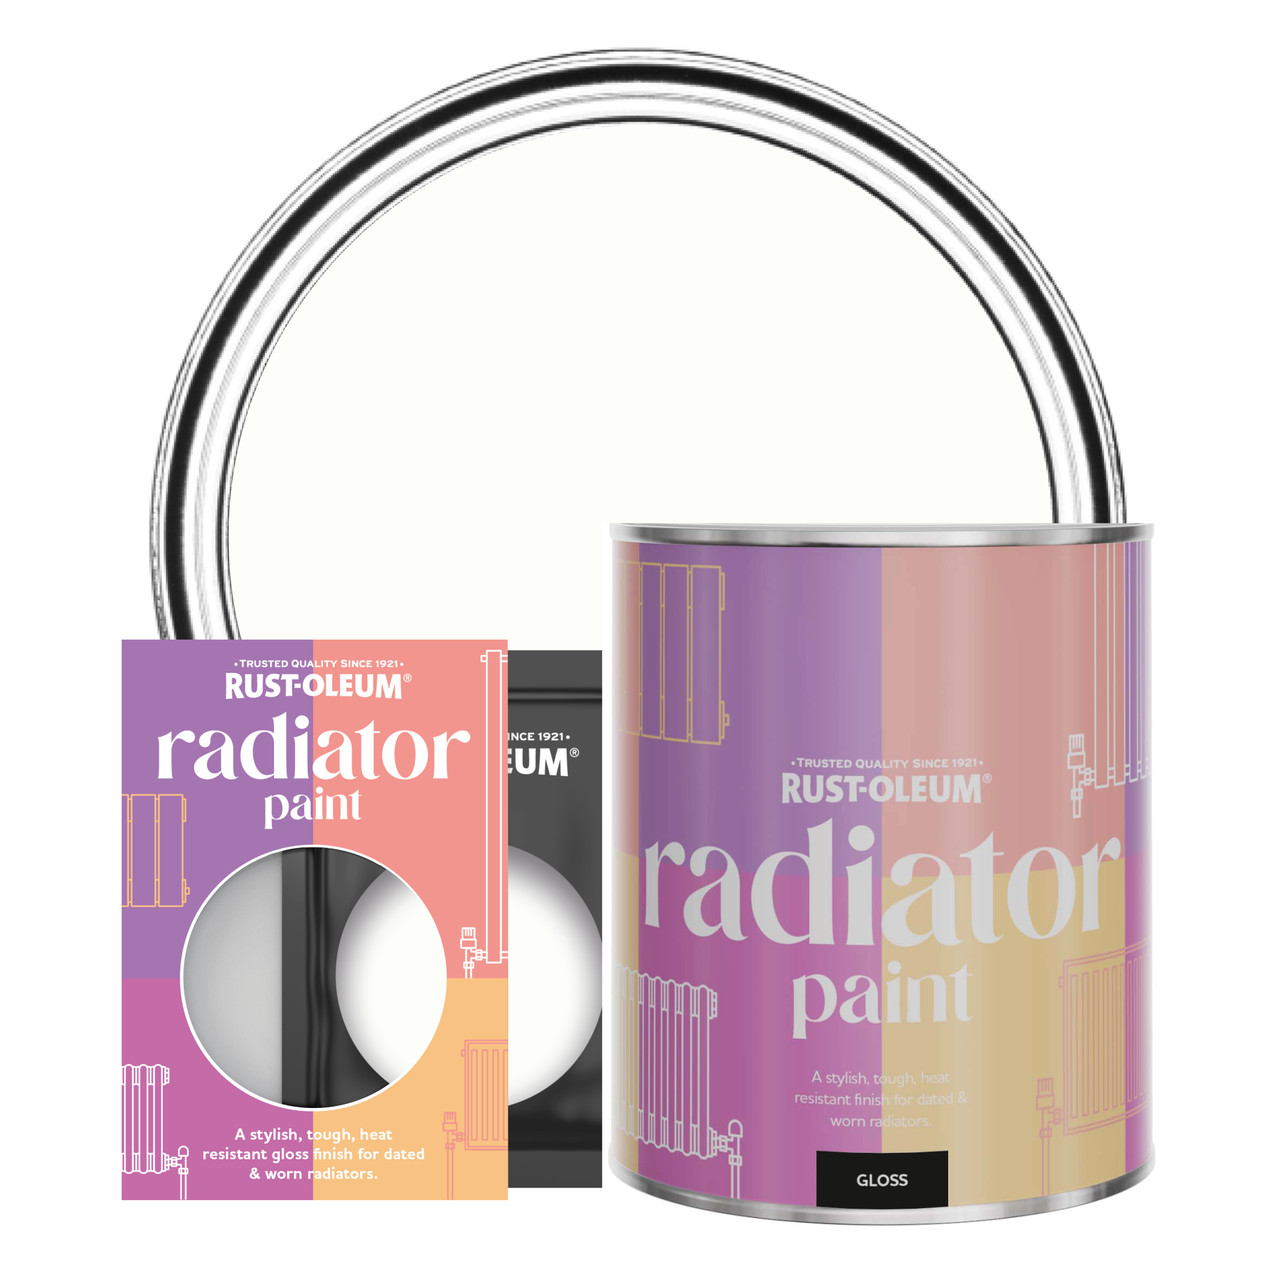 Rust-Oleum Radiator Paint, Gloss Finish - Chalk White - 750ml